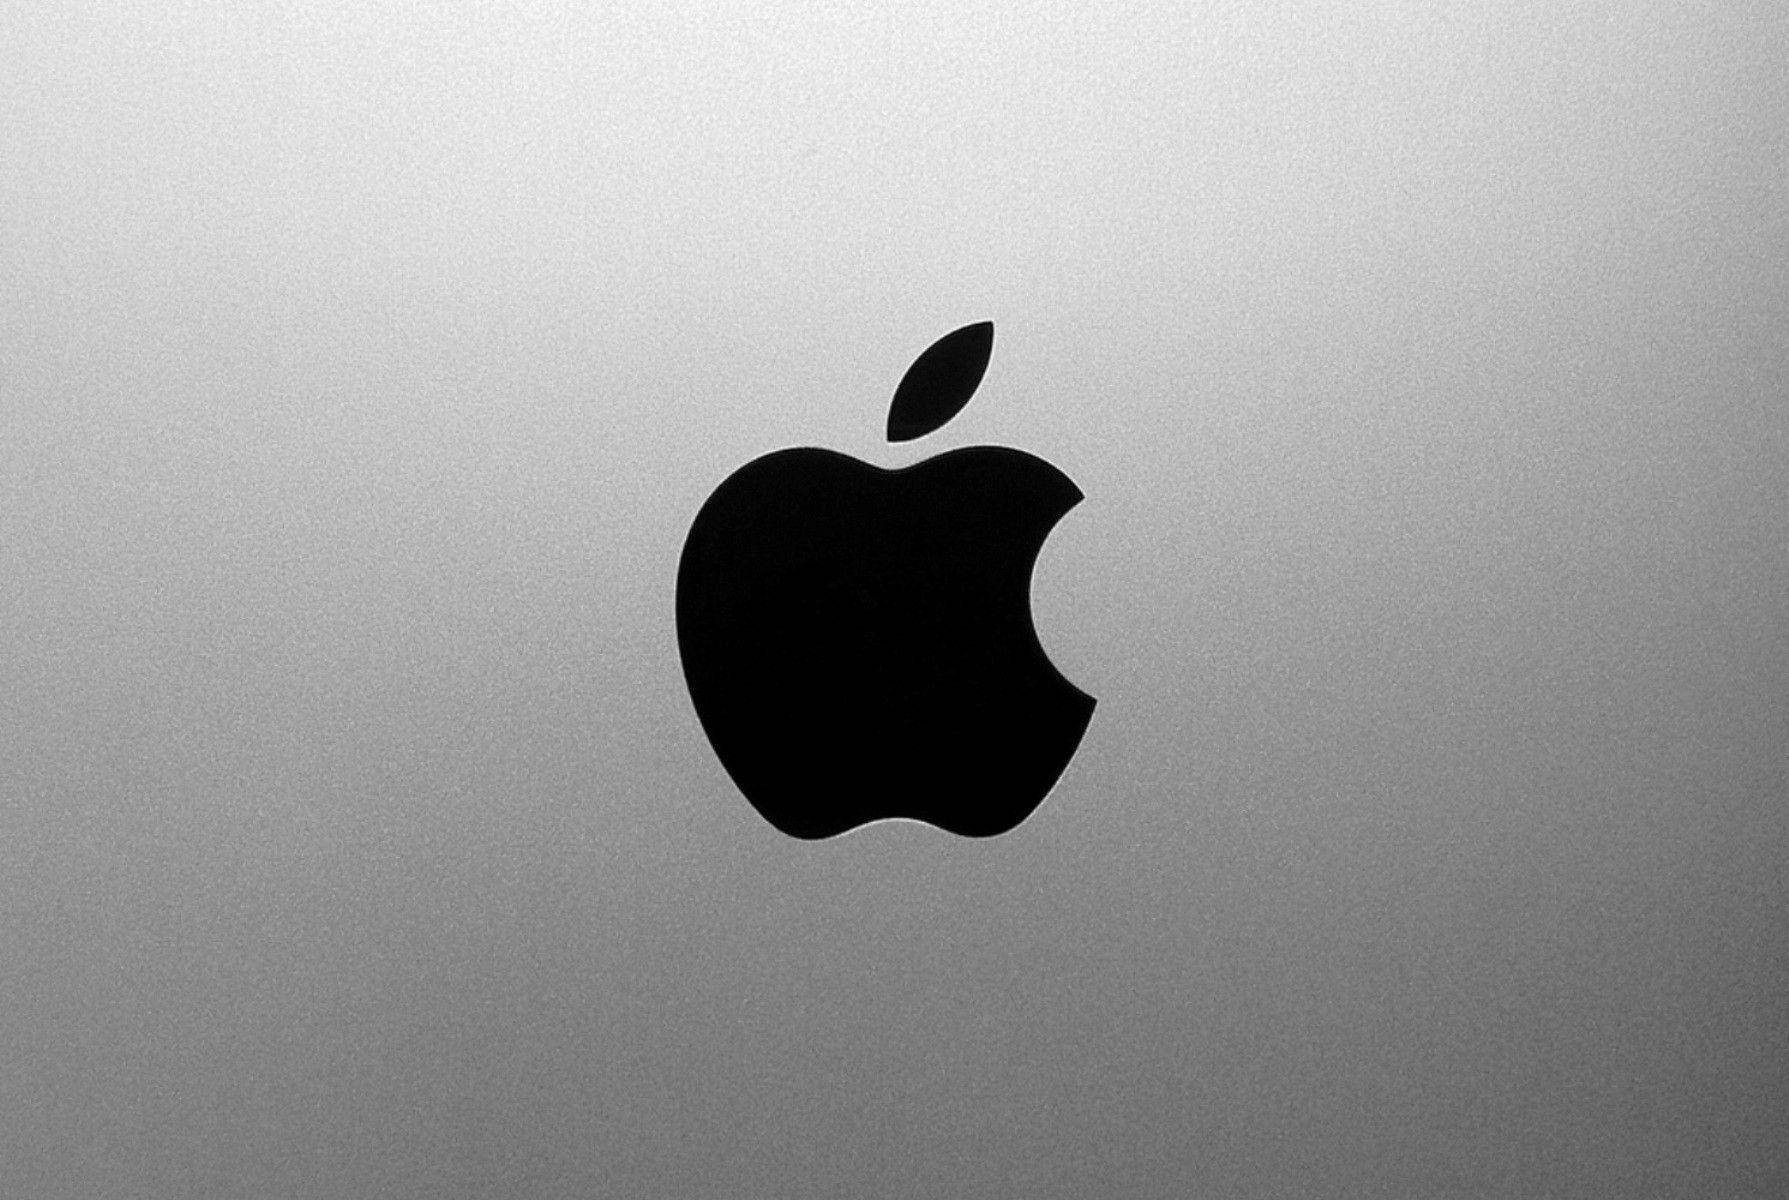 Black Apple Logo 4k Wallpaper